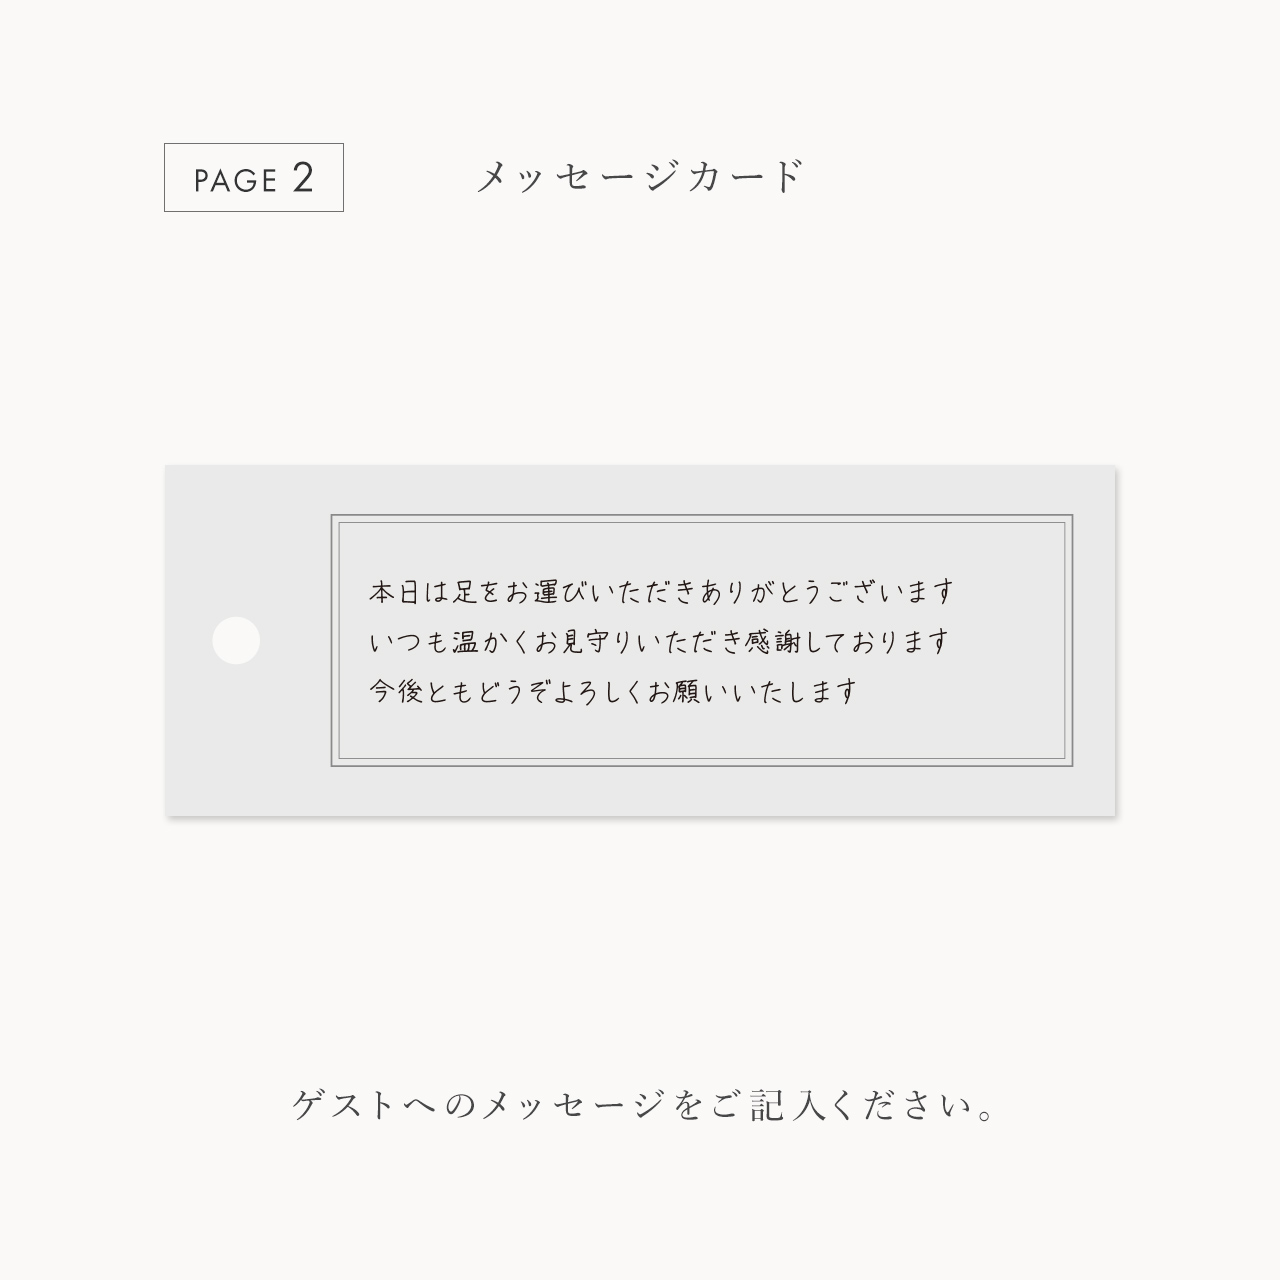 しおり型席札“shiori”[gray]